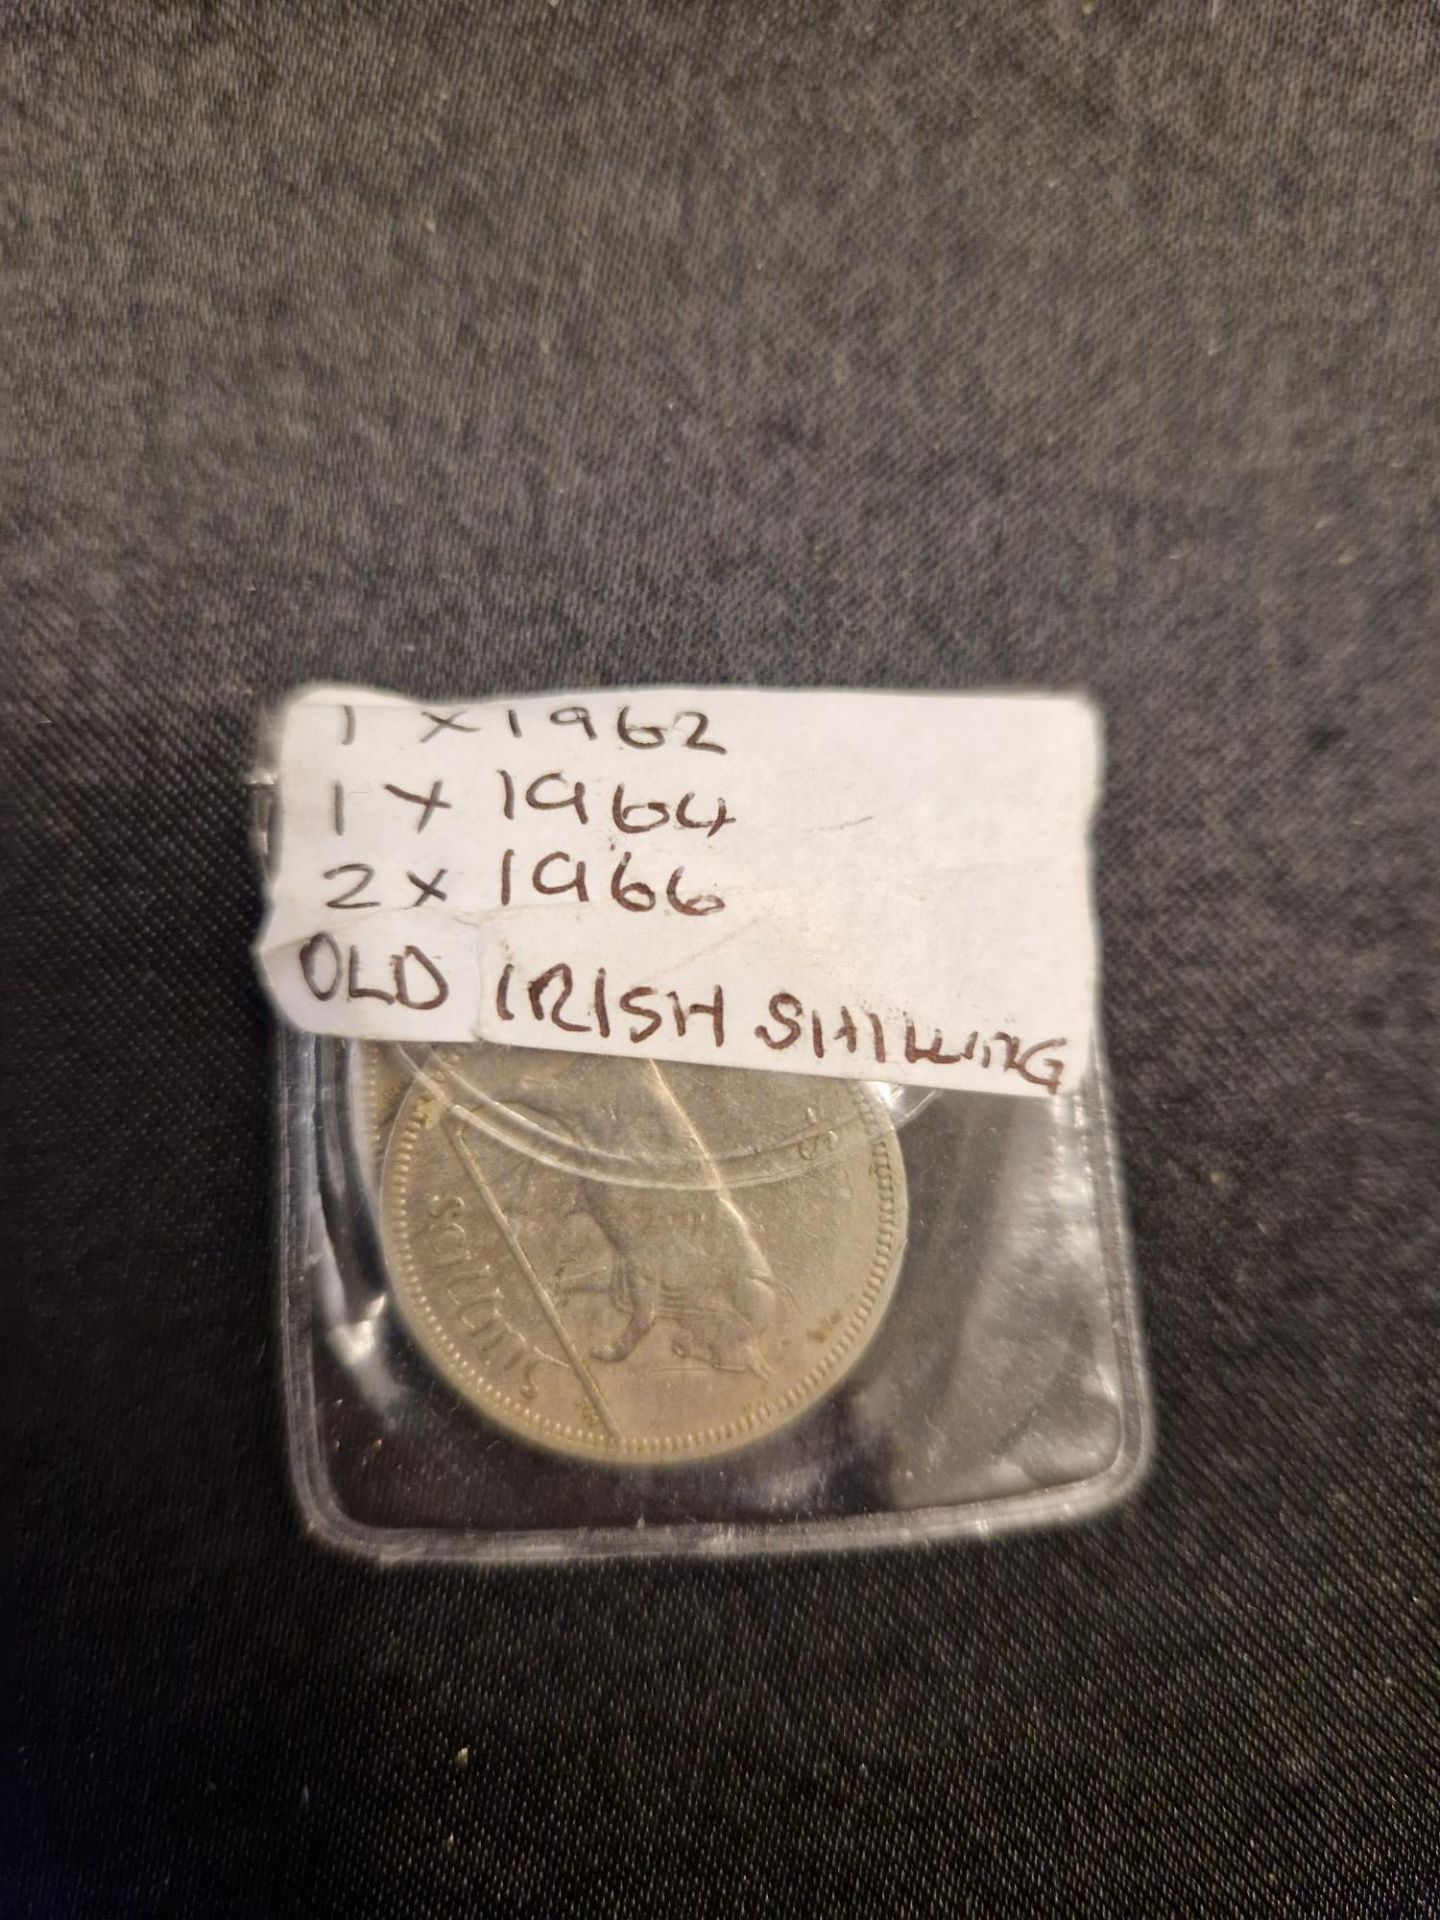 1 x 1962, 1 x 1964, 2 x 1966 Old irish shillings